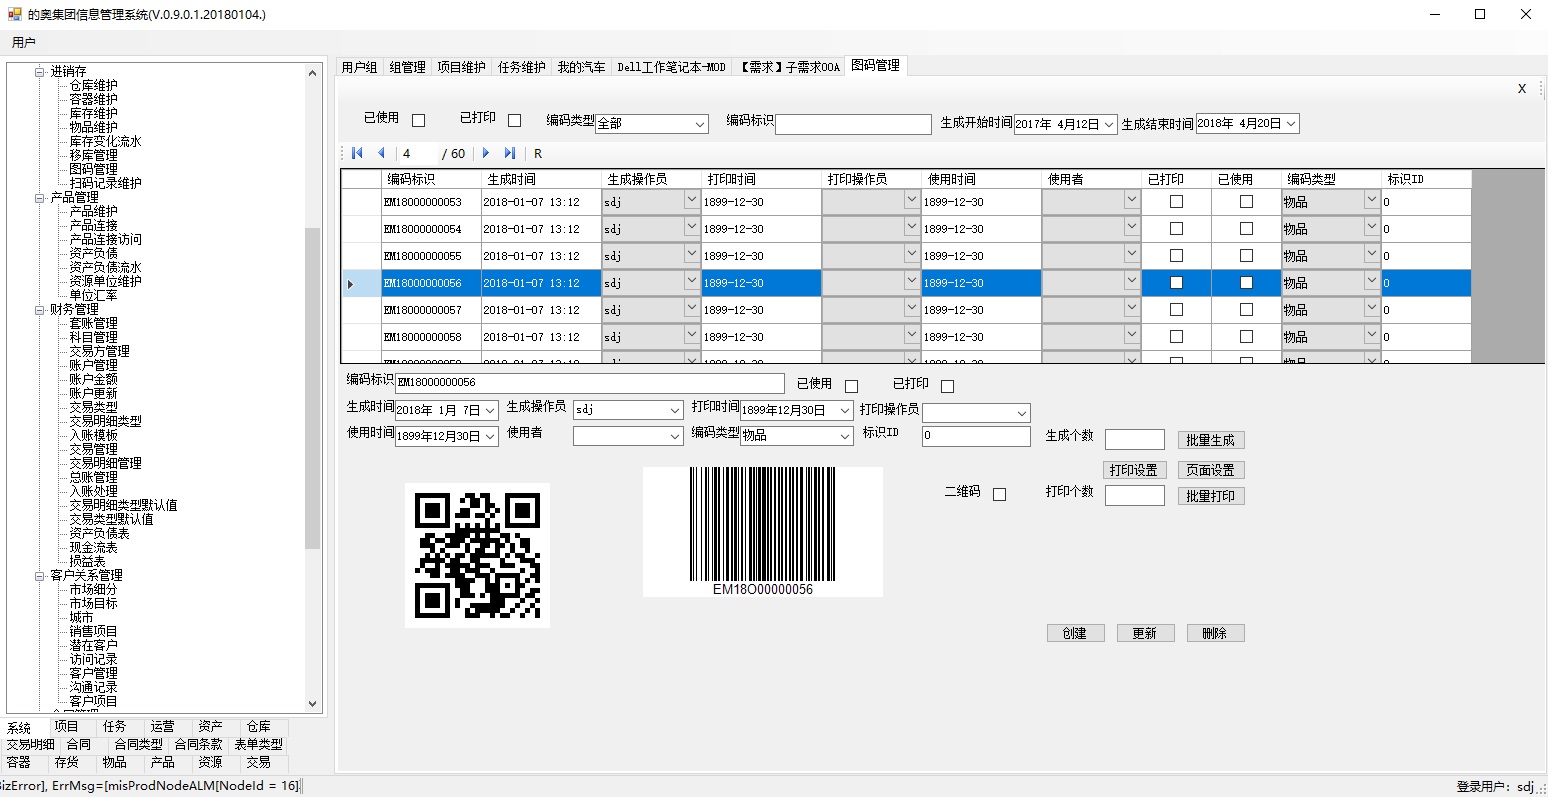 Shanghai Town Lake ERP图码管理支持二维码和条形码，可以对管理软件系统里的多种数据进行标识，比如商品、仓库、容器、合同、项目、任务、产品等。